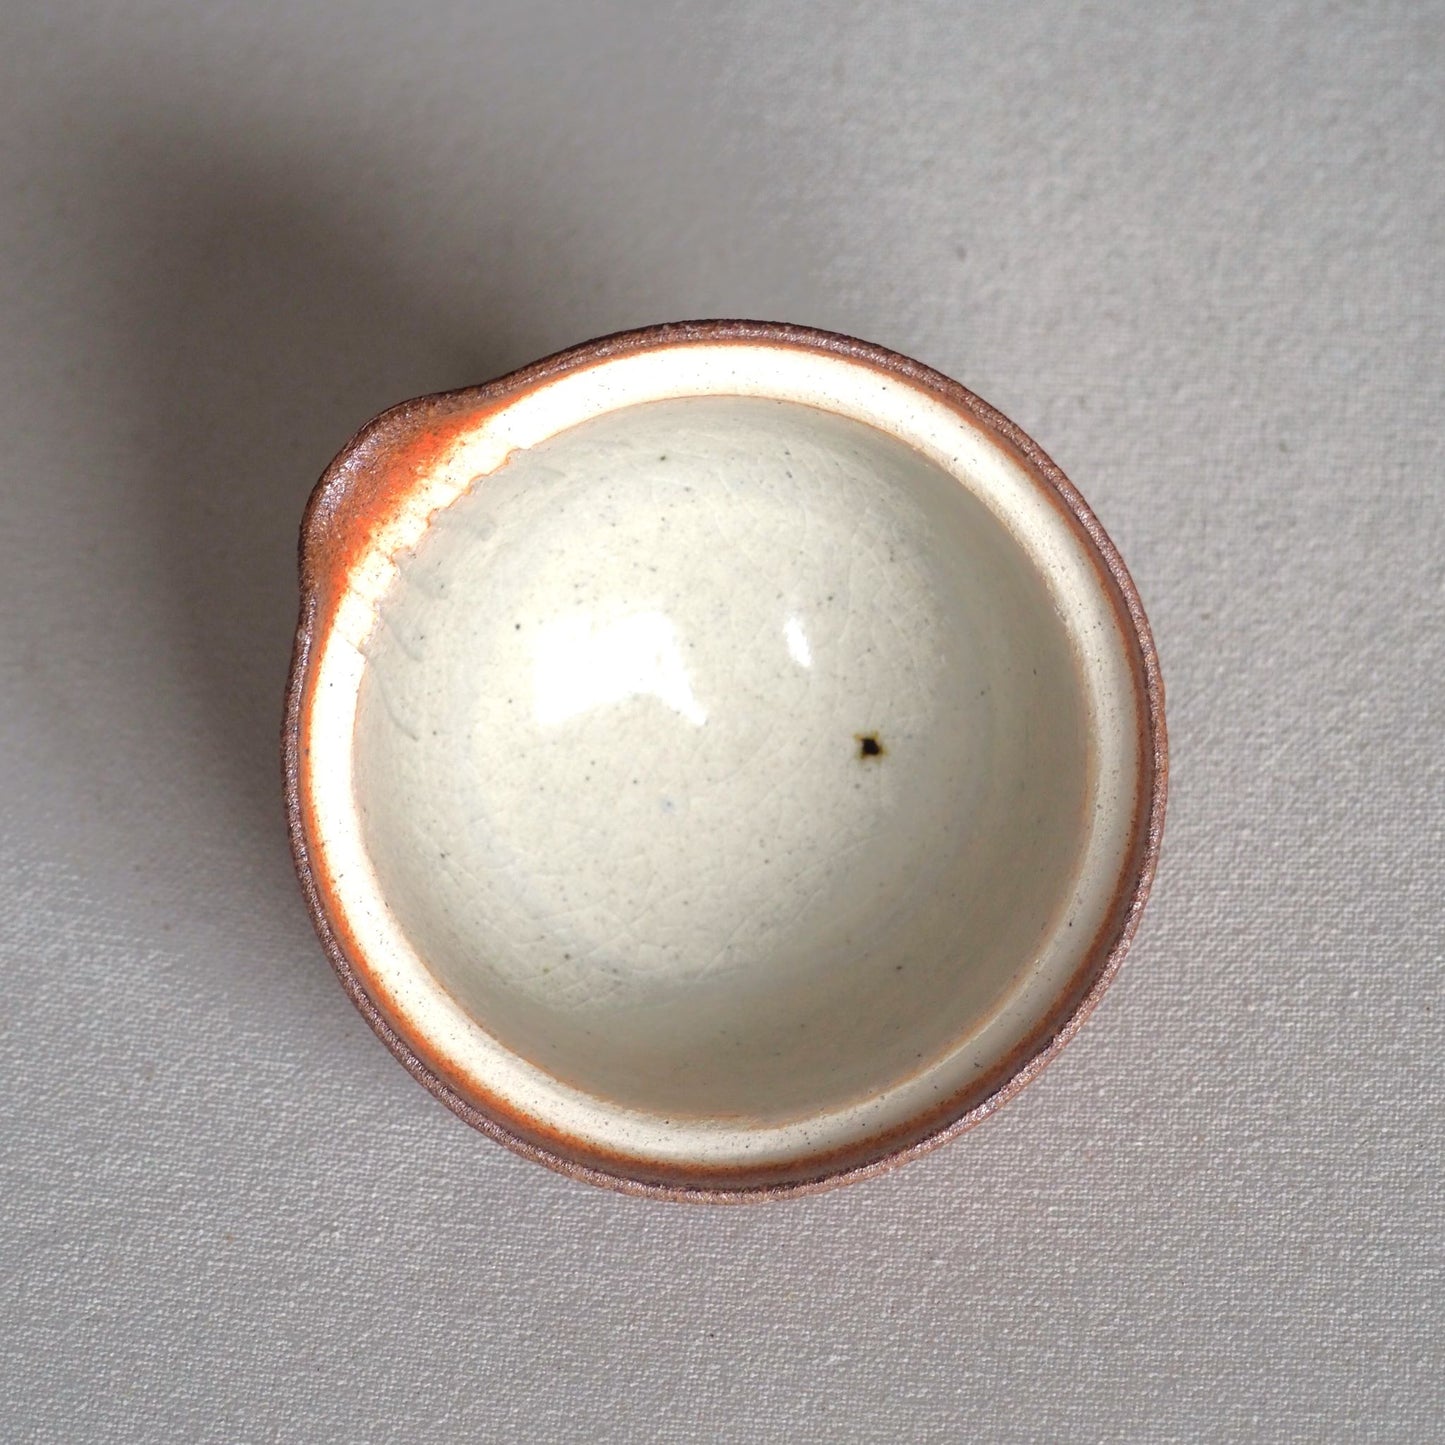 Shigaraki-ware Coarse-grained red teaware